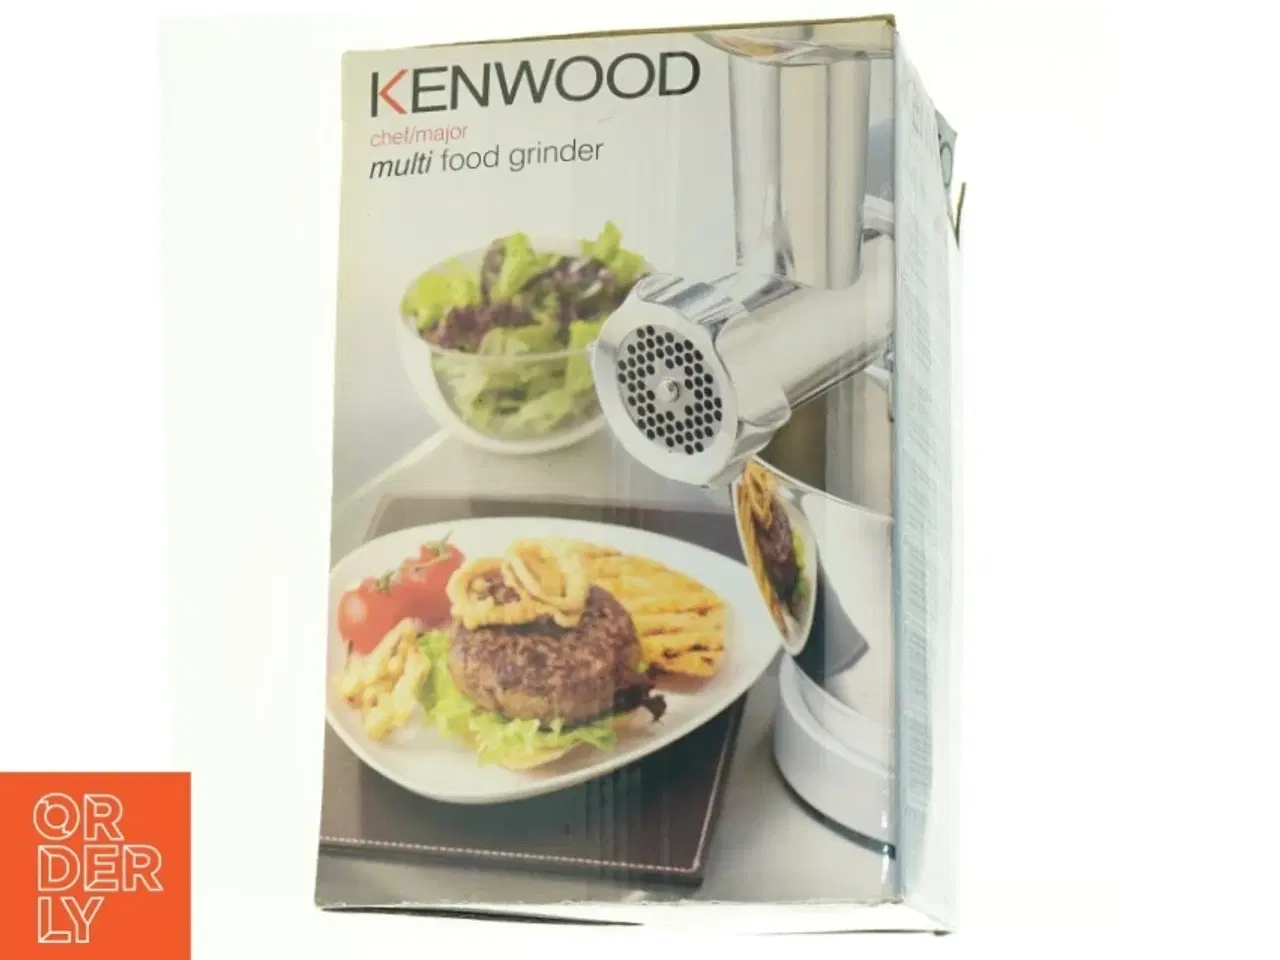 Billede 2 - Kenwood Kødhakker fra Kenwood (str. 26 x 21 cm)